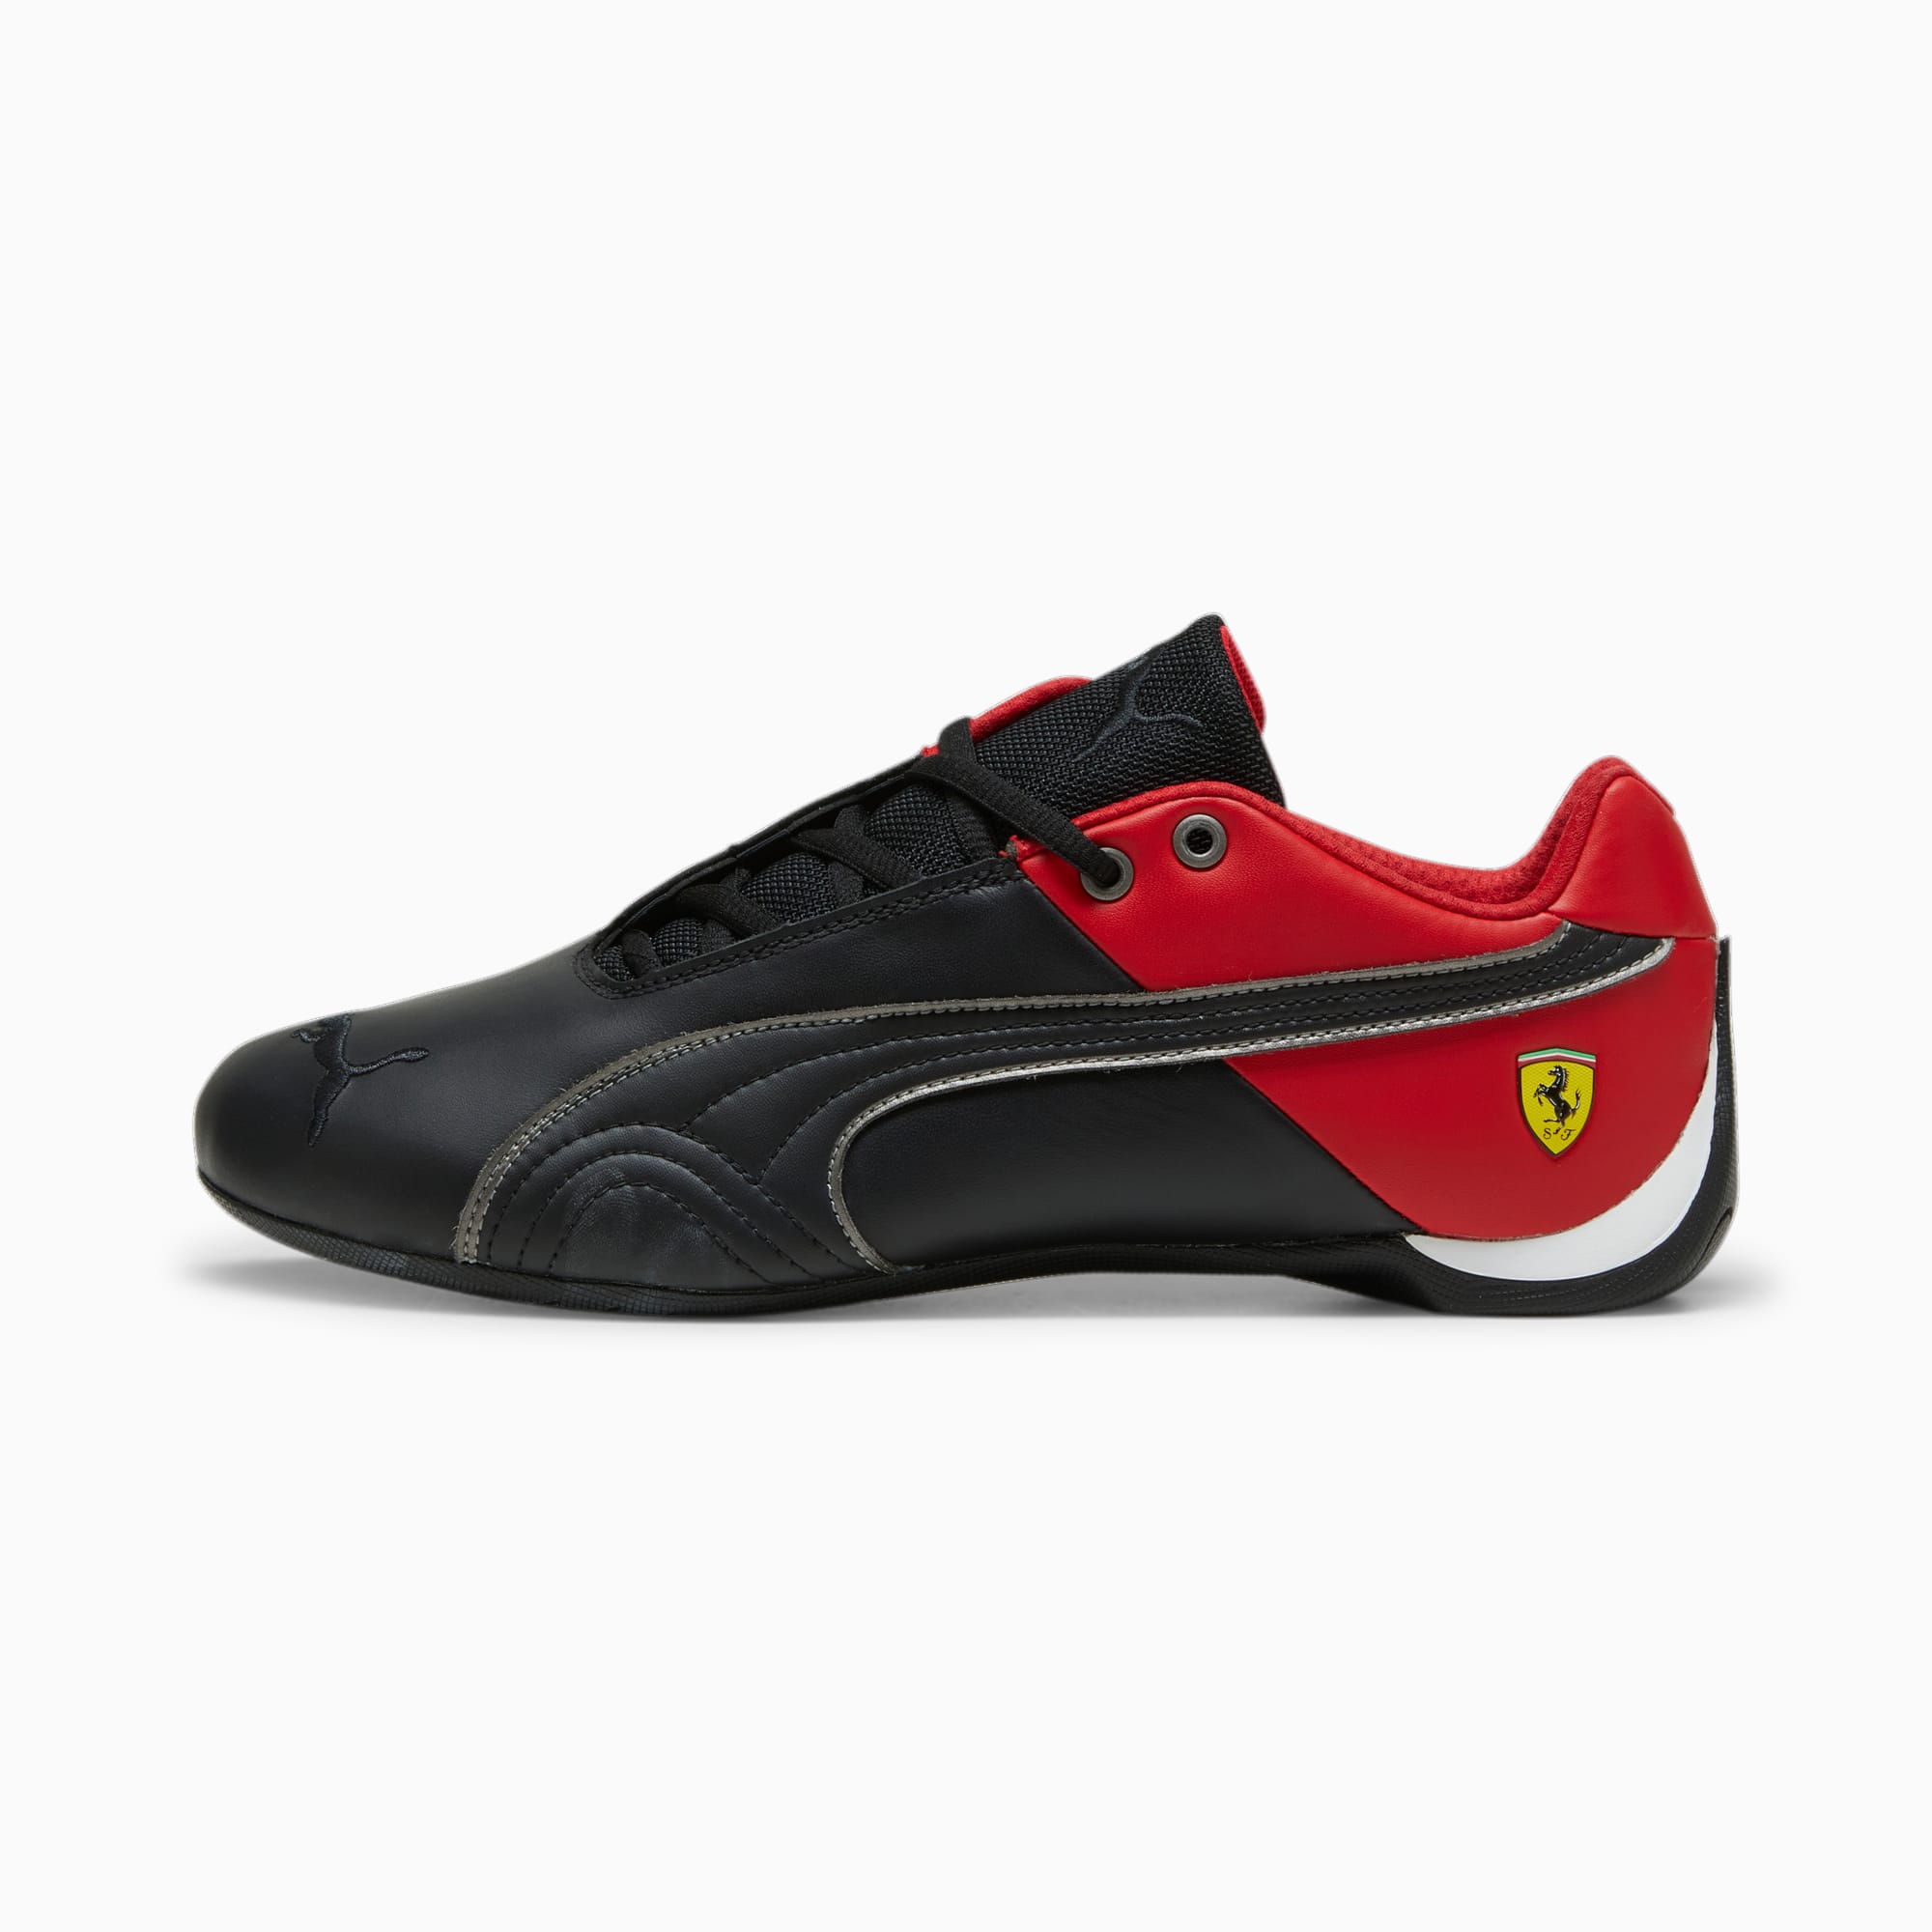 Zapatos Scuderia Ferrari Future Cat OG Motorsport | PUMA